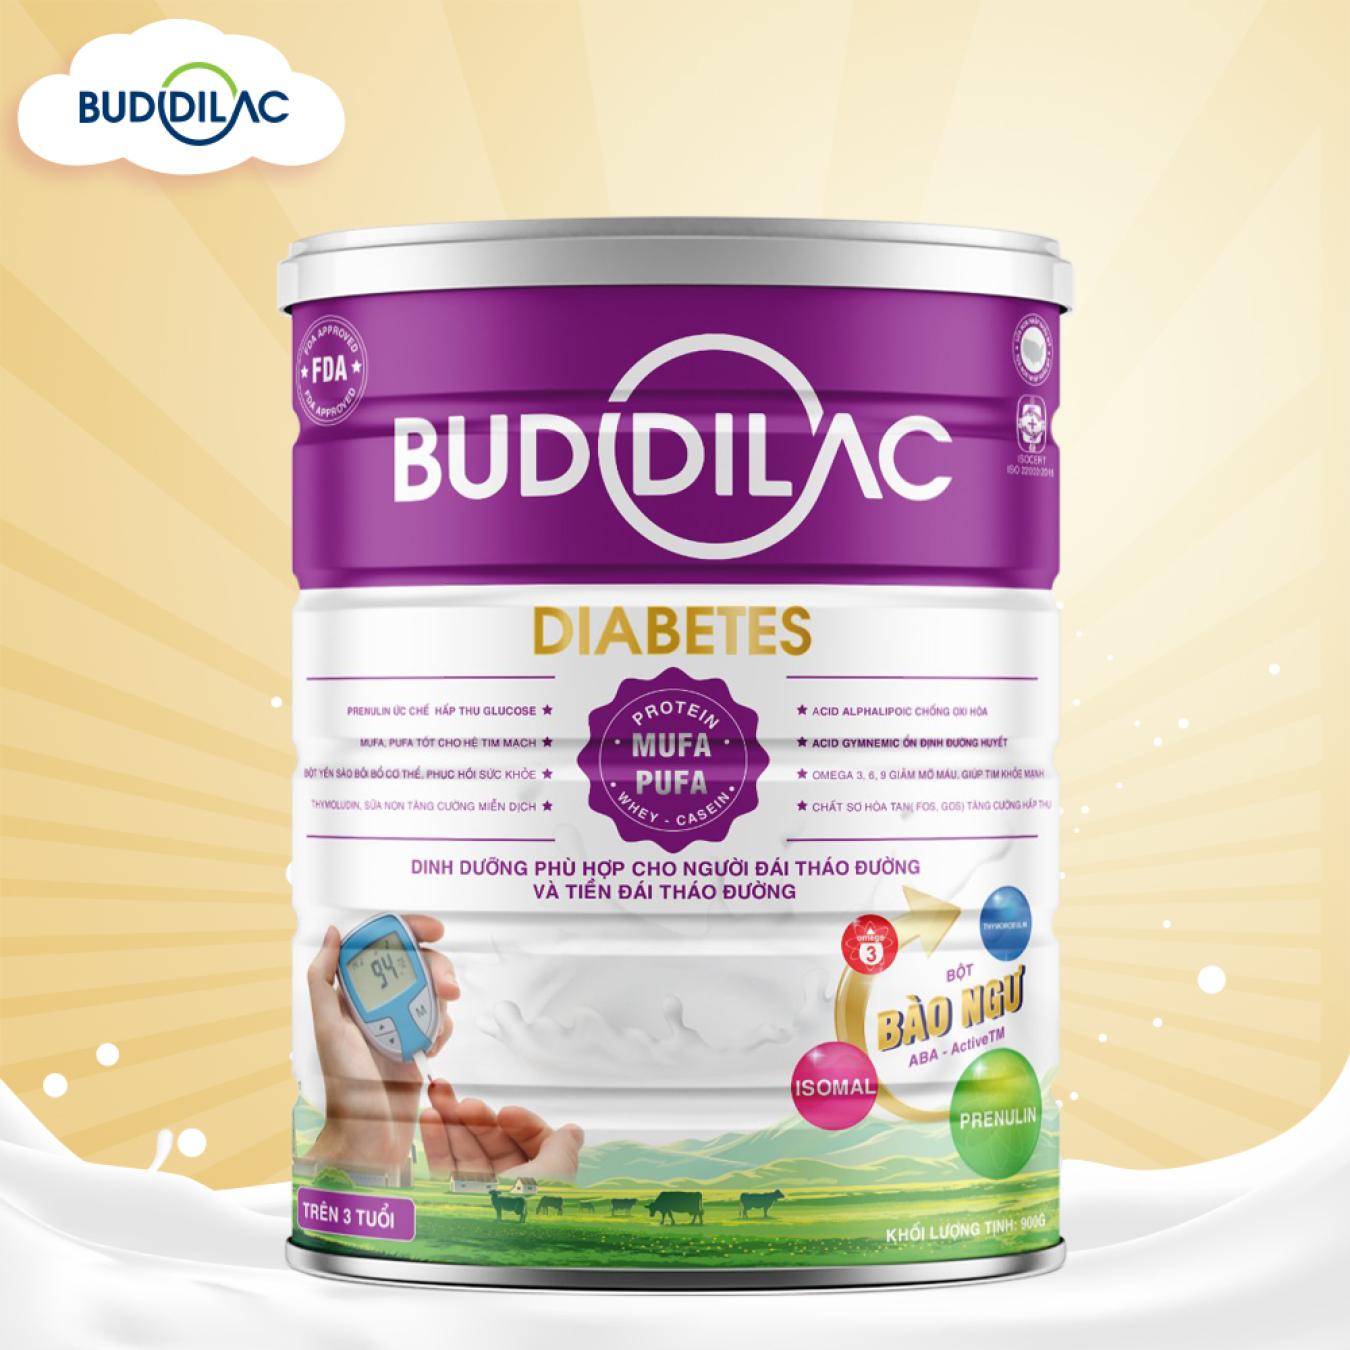 Buddiac diabetes - Sữa dành cho người tiểu đường